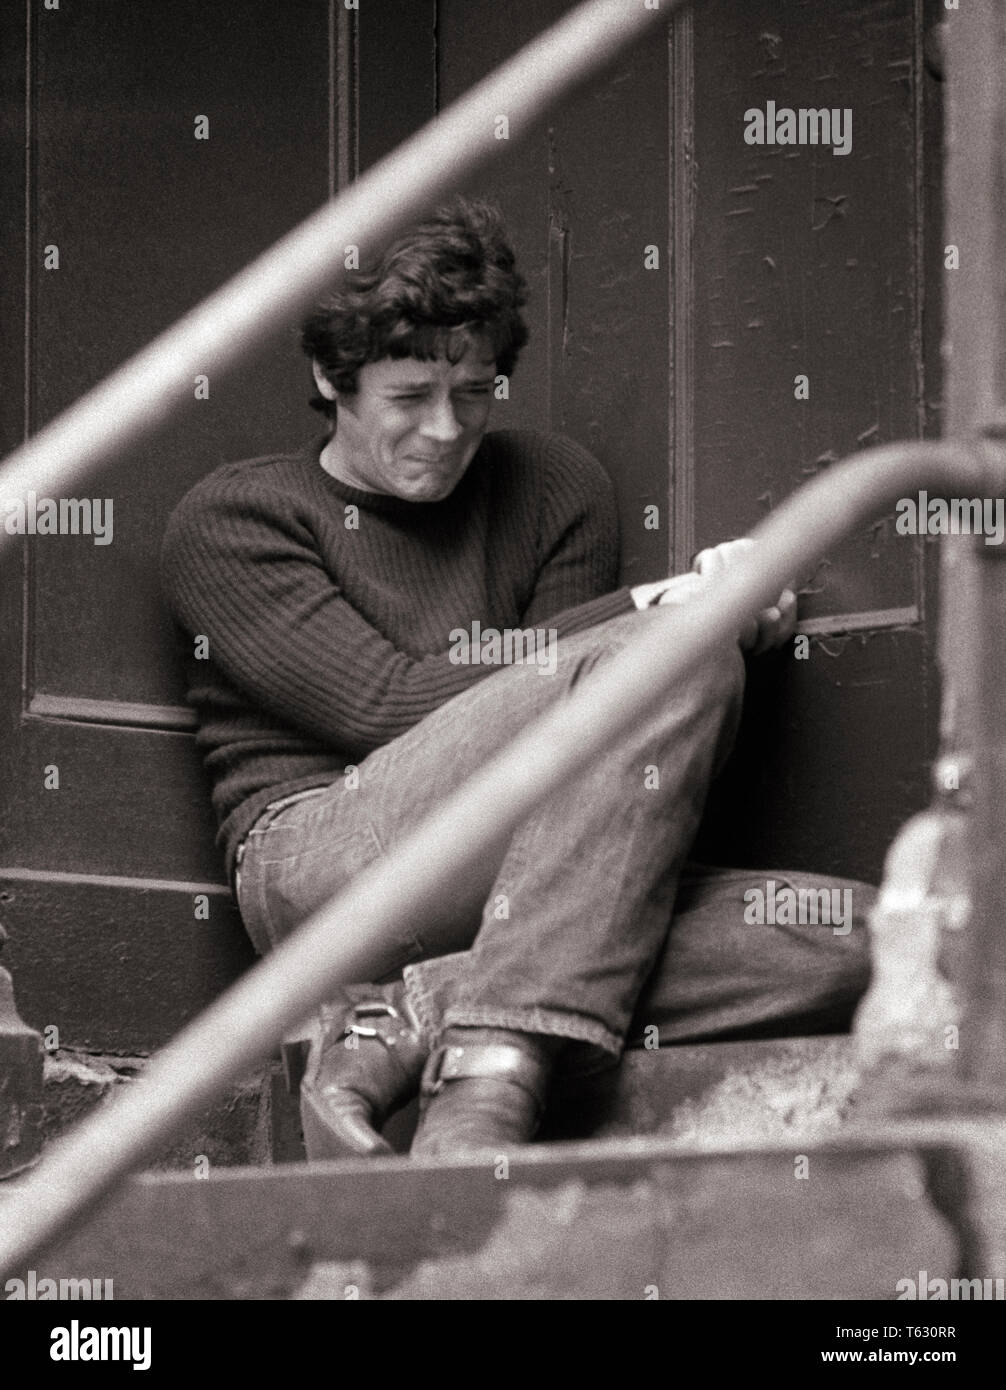 1970 s EMOTIONALE GEDRÜCKT junge Mann sitzt auf Gebäude STOOP SCHREIEN VAGRANT DROGENABHÄNGIGER verlorene Seele-v 268 HAR 001 HARS NERVÖS MEDIKAMENT B&W TRAURIGKEIT ANGST SUCHT WEINEND OBDACHLOSE NIEDRIGEN WINKEL VERZWEIFLUNG BAWLING STIMMUNG DER PSYCHISCHEN GESUNDHEIT SCHLUCHZEN KONZEPTIONELLE AUFGEGEBENEN BETÄUBUNGSMITTEL Herabneigung machte-und-heraus SKID ROW SPANNUNG SÜCHTIGER EMOTIONALE GEWOHNHEIT JUNKIE MISERABEL BENUTZER VAGRANT junger erwachsener Mann SCHWARZ UND WEISS BUM KAUKASISCHEN ETHNIE ABHÄNGIGKEIT HAR 001 GEISTESKRANKHEIT ALTMODISCHE SEELE Stockfoto